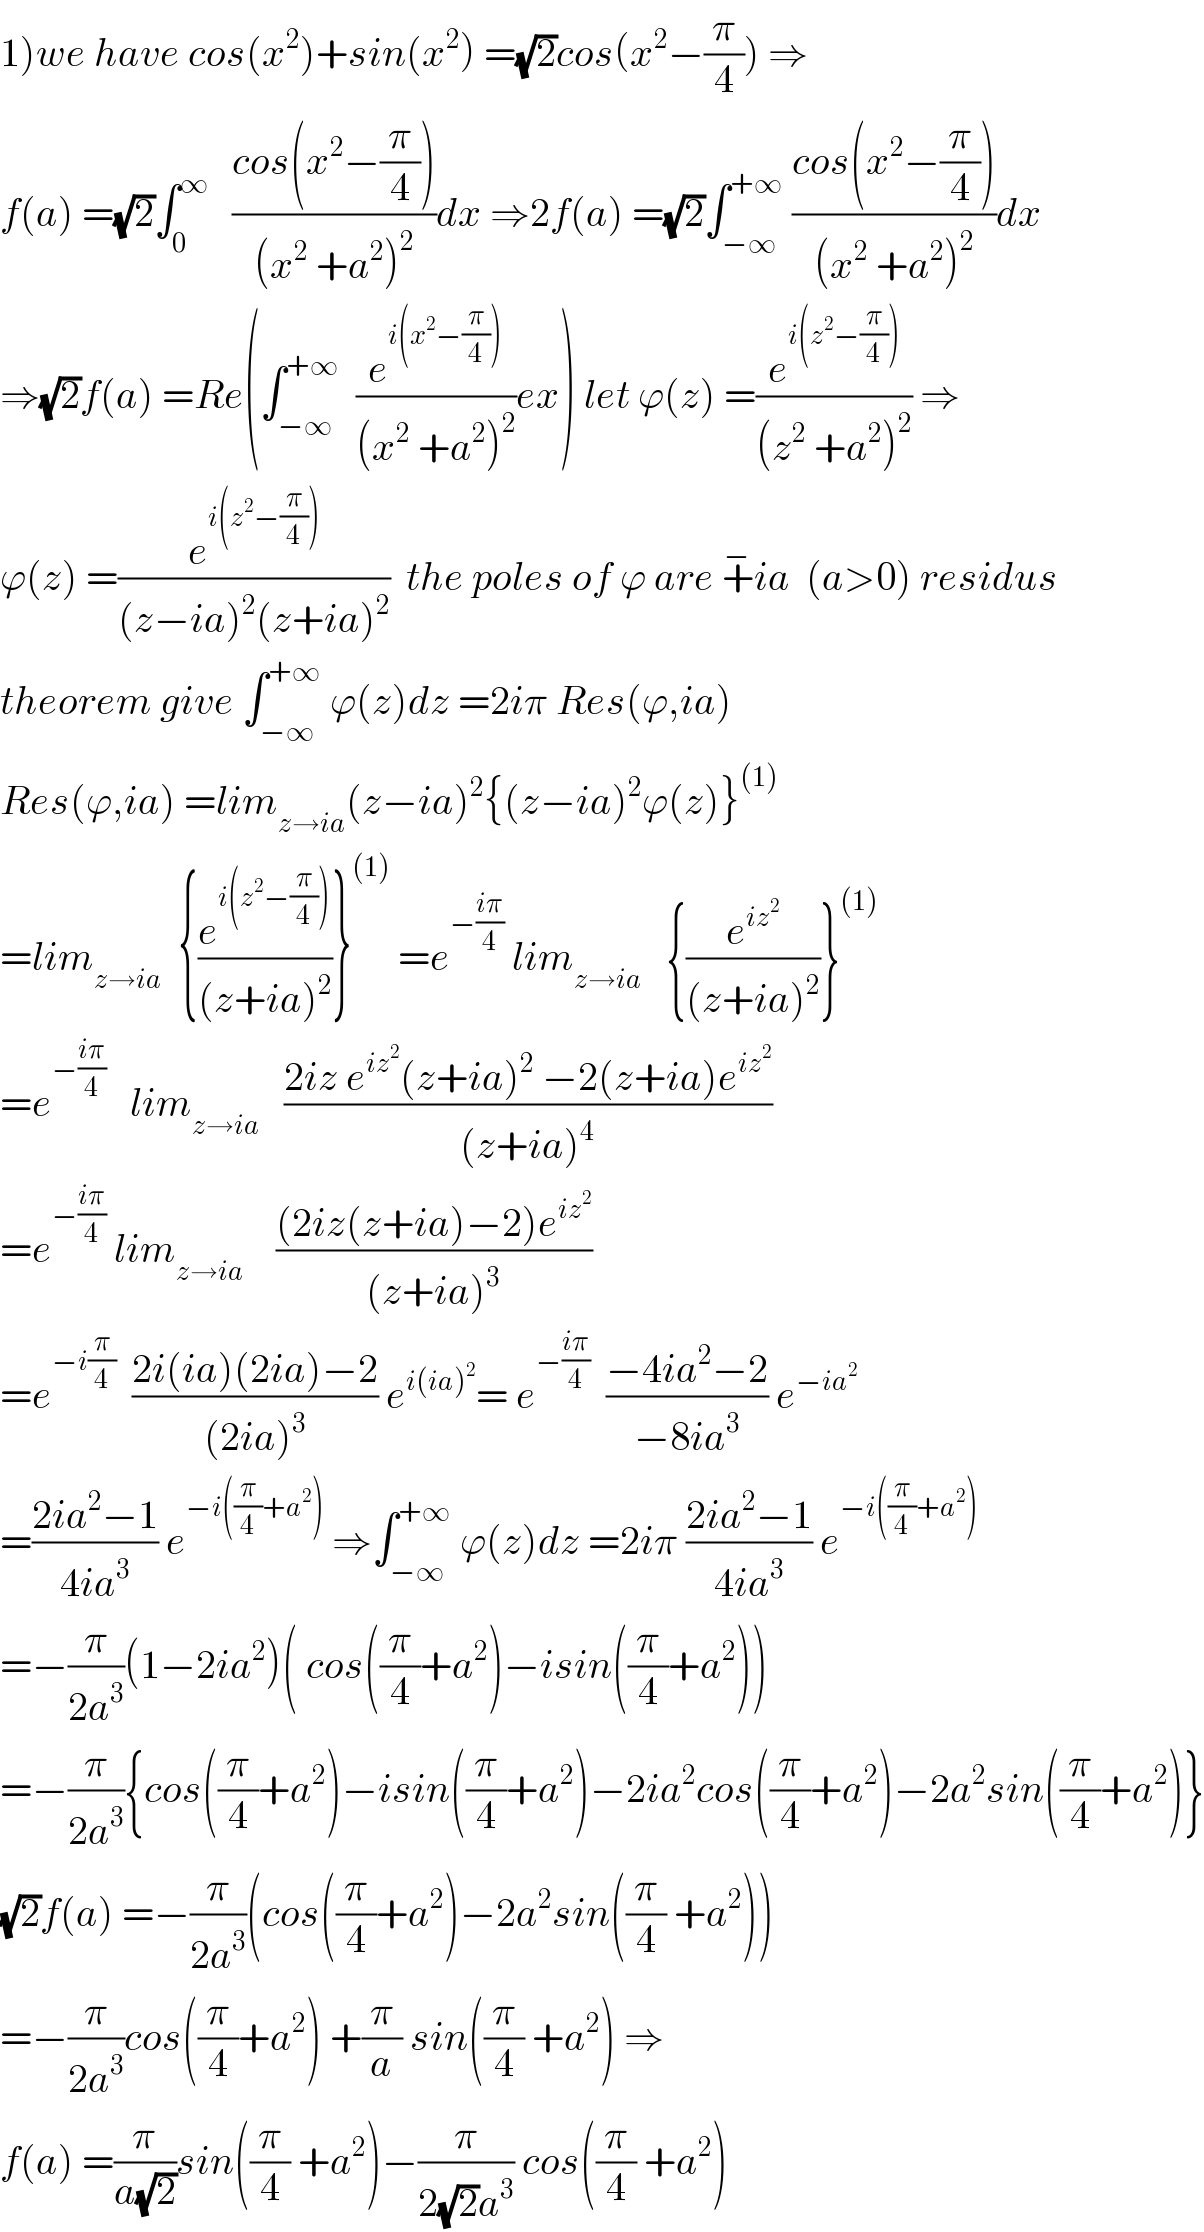 1)we have cos(x^2 )+sin(x^2 ) =(√2)cos(x^2 −(π/4)) ⇒  f(a) =(√2)∫_0 ^∞    ((cos(x^2 −(π/4)))/((x^2  +a^2 )^2 ))dx ⇒2f(a) =(√2)∫_(−∞) ^(+∞)  ((cos(x^2 −(π/4)))/((x^2  +a^2 )^2 ))dx  ⇒(√2)f(a) =Re(∫_(−∞) ^(+∞)   (e^(i(x^2 −(π/4))) /((x^2  +a^2 )^2 ))ex) let ϕ(z) =(e^(i(z^2 −(π/4))) /((z^2  +a^2 )^2 )) ⇒  ϕ(z) =(e^(i(z^2 −(π/4))) /((z−ia)^2 (z+ia)^2 ))  the poles of ϕ are +^− ia  (a>0) residus  theorem give ∫_(−∞) ^(+∞)  ϕ(z)dz =2iπ Res(ϕ,ia)  Res(ϕ,ia) =lim_(z→ia) (z−ia)^2 {(z−ia)^2 ϕ(z)}^((1))   =lim_(z→ia)   {(e^(i(z^2 −(π/4))) /((z+ia)^2 ))}^((1))  =e^(−((iπ)/4))  lim_(z→ia)    {(e^(iz^2 ) /((z+ia)^2 ))}^((1))   =e^(−((iπ)/4))    lim_(z→ia)    ((2iz e^(iz^2 ) (z+ia)^2  −2(z+ia)e^(iz^2 ) )/((z+ia)^4 ))  =e^(−((iπ)/4))  lim_(z→ia)     (((2iz(z+ia)−2)e^(iz^2 ) )/((z+ia)^3 ))  =e^(−i(π/4))   ((2i(ia)(2ia)−2)/((2ia)^3 )) e^(i(ia)^2 ) = e^(−((iπ)/4))   ((−4ia^2 −2)/(−8ia^3 )) e^(−ia^2 )   =((2ia^2 −1)/(4ia^3 )) e^(−i((π/4)+a^2 ))  ⇒∫_(−∞) ^(+∞)  ϕ(z)dz =2iπ ((2ia^2 −1)/(4ia^3 )) e^(−i((π/4)+a^2 ))   =−(π/(2a^3 ))(1−2ia^2 )( cos((π/4)+a^2 )−isin((π/4)+a^2 ))  =−(π/(2a^3 )){cos((π/4)+a^2 )−isin((π/4)+a^2 )−2ia^2 cos((π/4)+a^2 )−2a^2 sin((π/4)+a^2 )}  (√2)f(a) =−(π/(2a^3 ))(cos((π/4)+a^2 )−2a^2 sin((π/4) +a^2 ))  =−(π/(2a^3 ))cos((π/4)+a^2 ) +(π/a) sin((π/4) +a^2 ) ⇒  f(a) =(π/(a(√2)))sin((π/4) +a^2 )−(π/(2(√2)a^3 )) cos((π/4) +a^2 )  